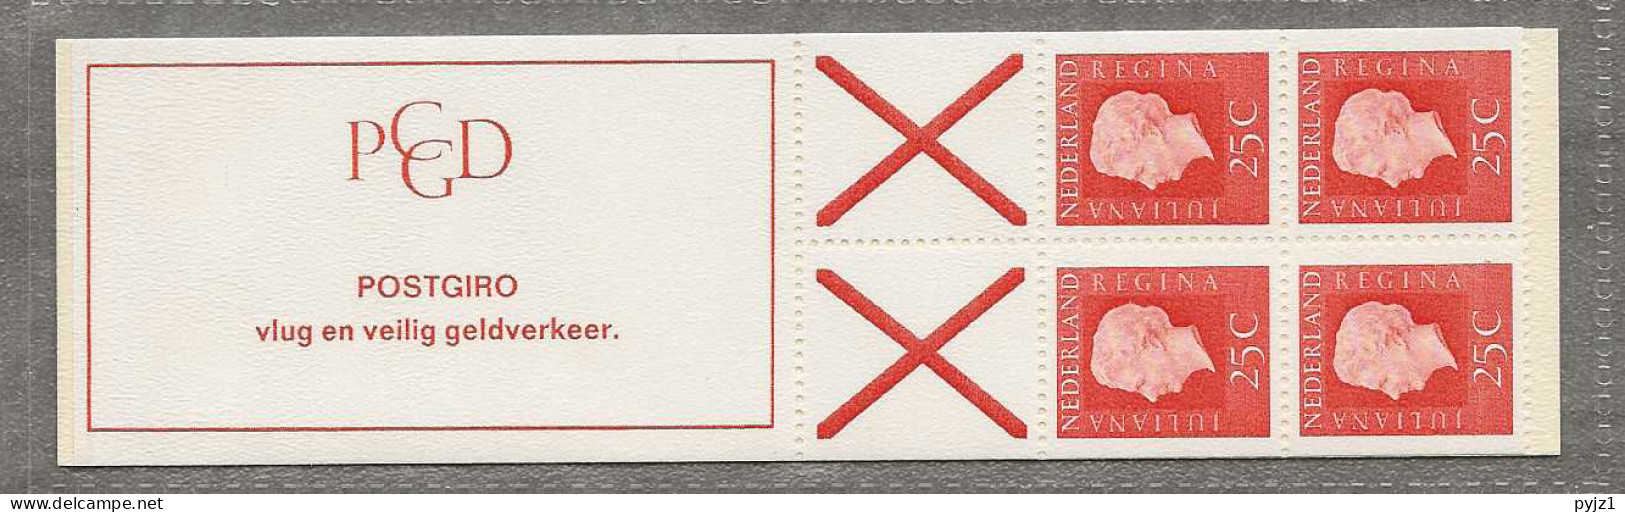 1969  MNH PB 9eF  Nederland Postfris** - Postzegelboekjes En Roltandingzegels